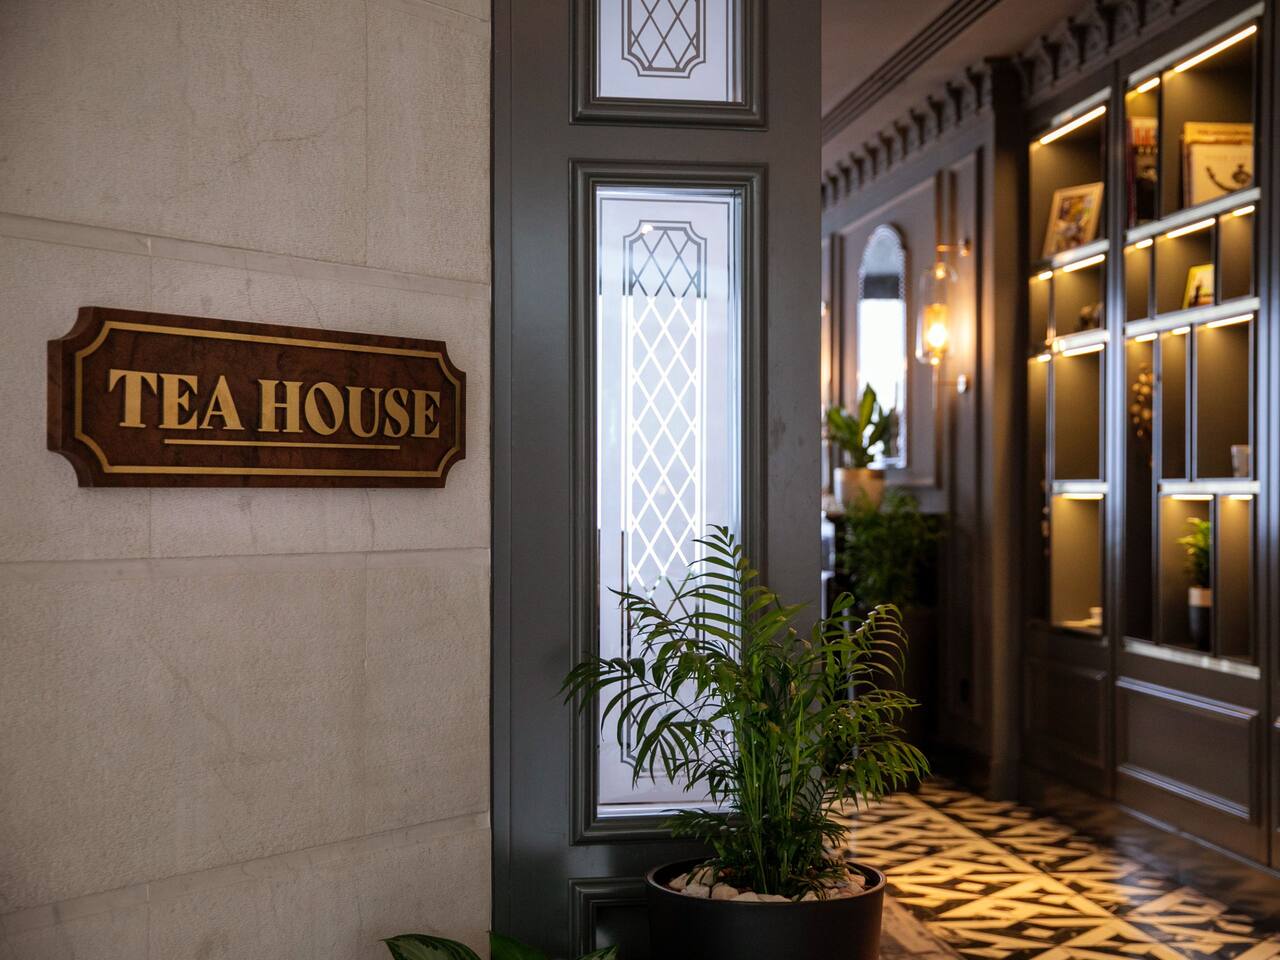 Tea house entrance